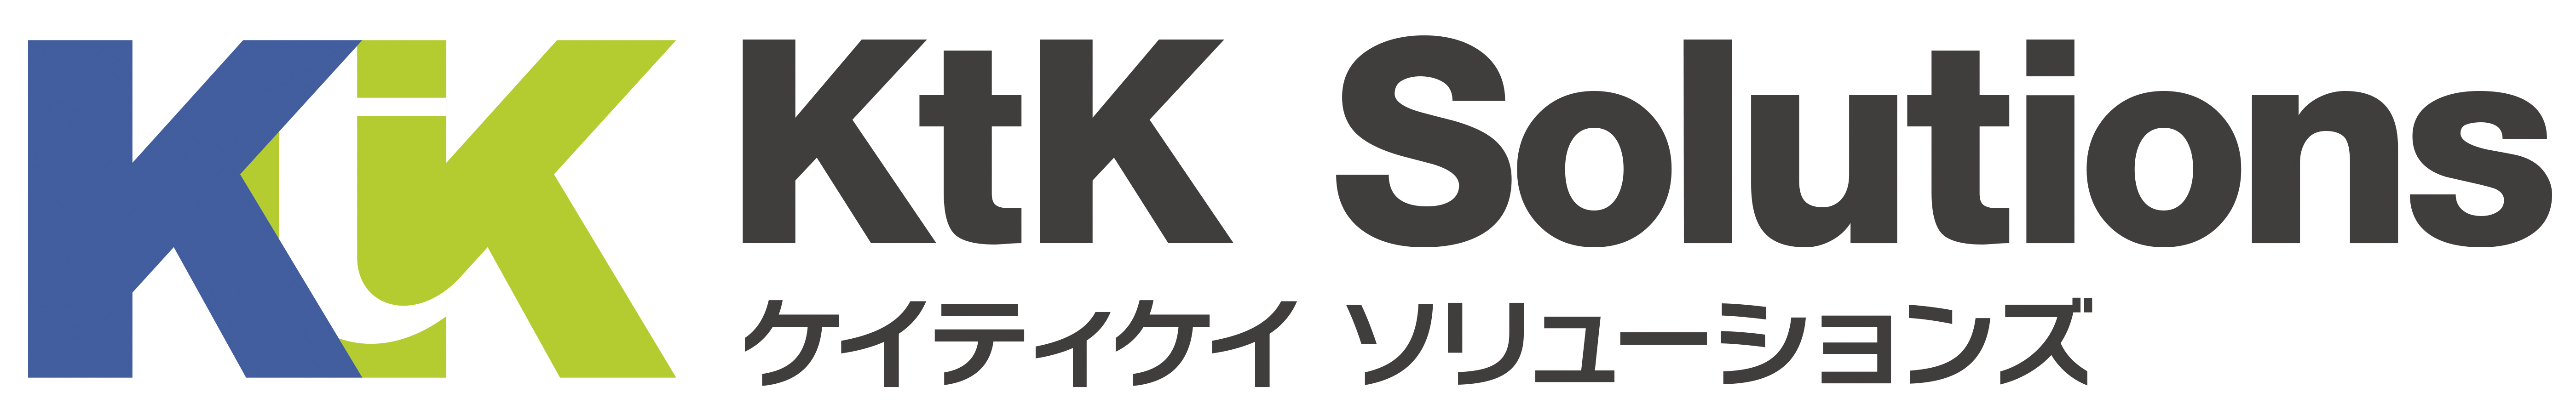 KtK-Sol　会社ロゴ